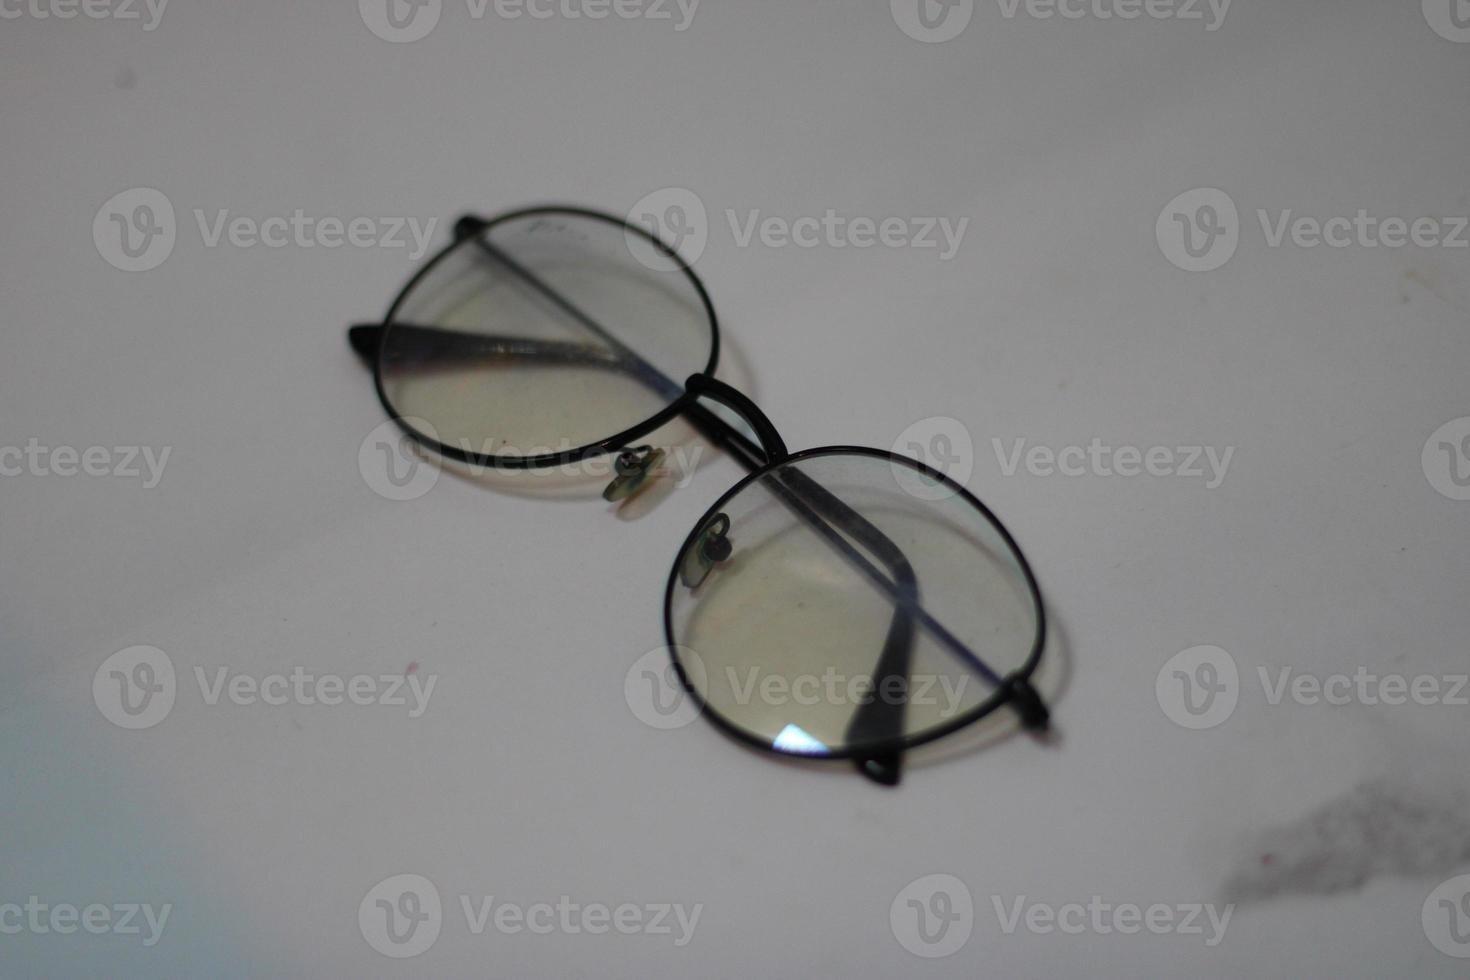 foto do moderno óculos com branco fundo